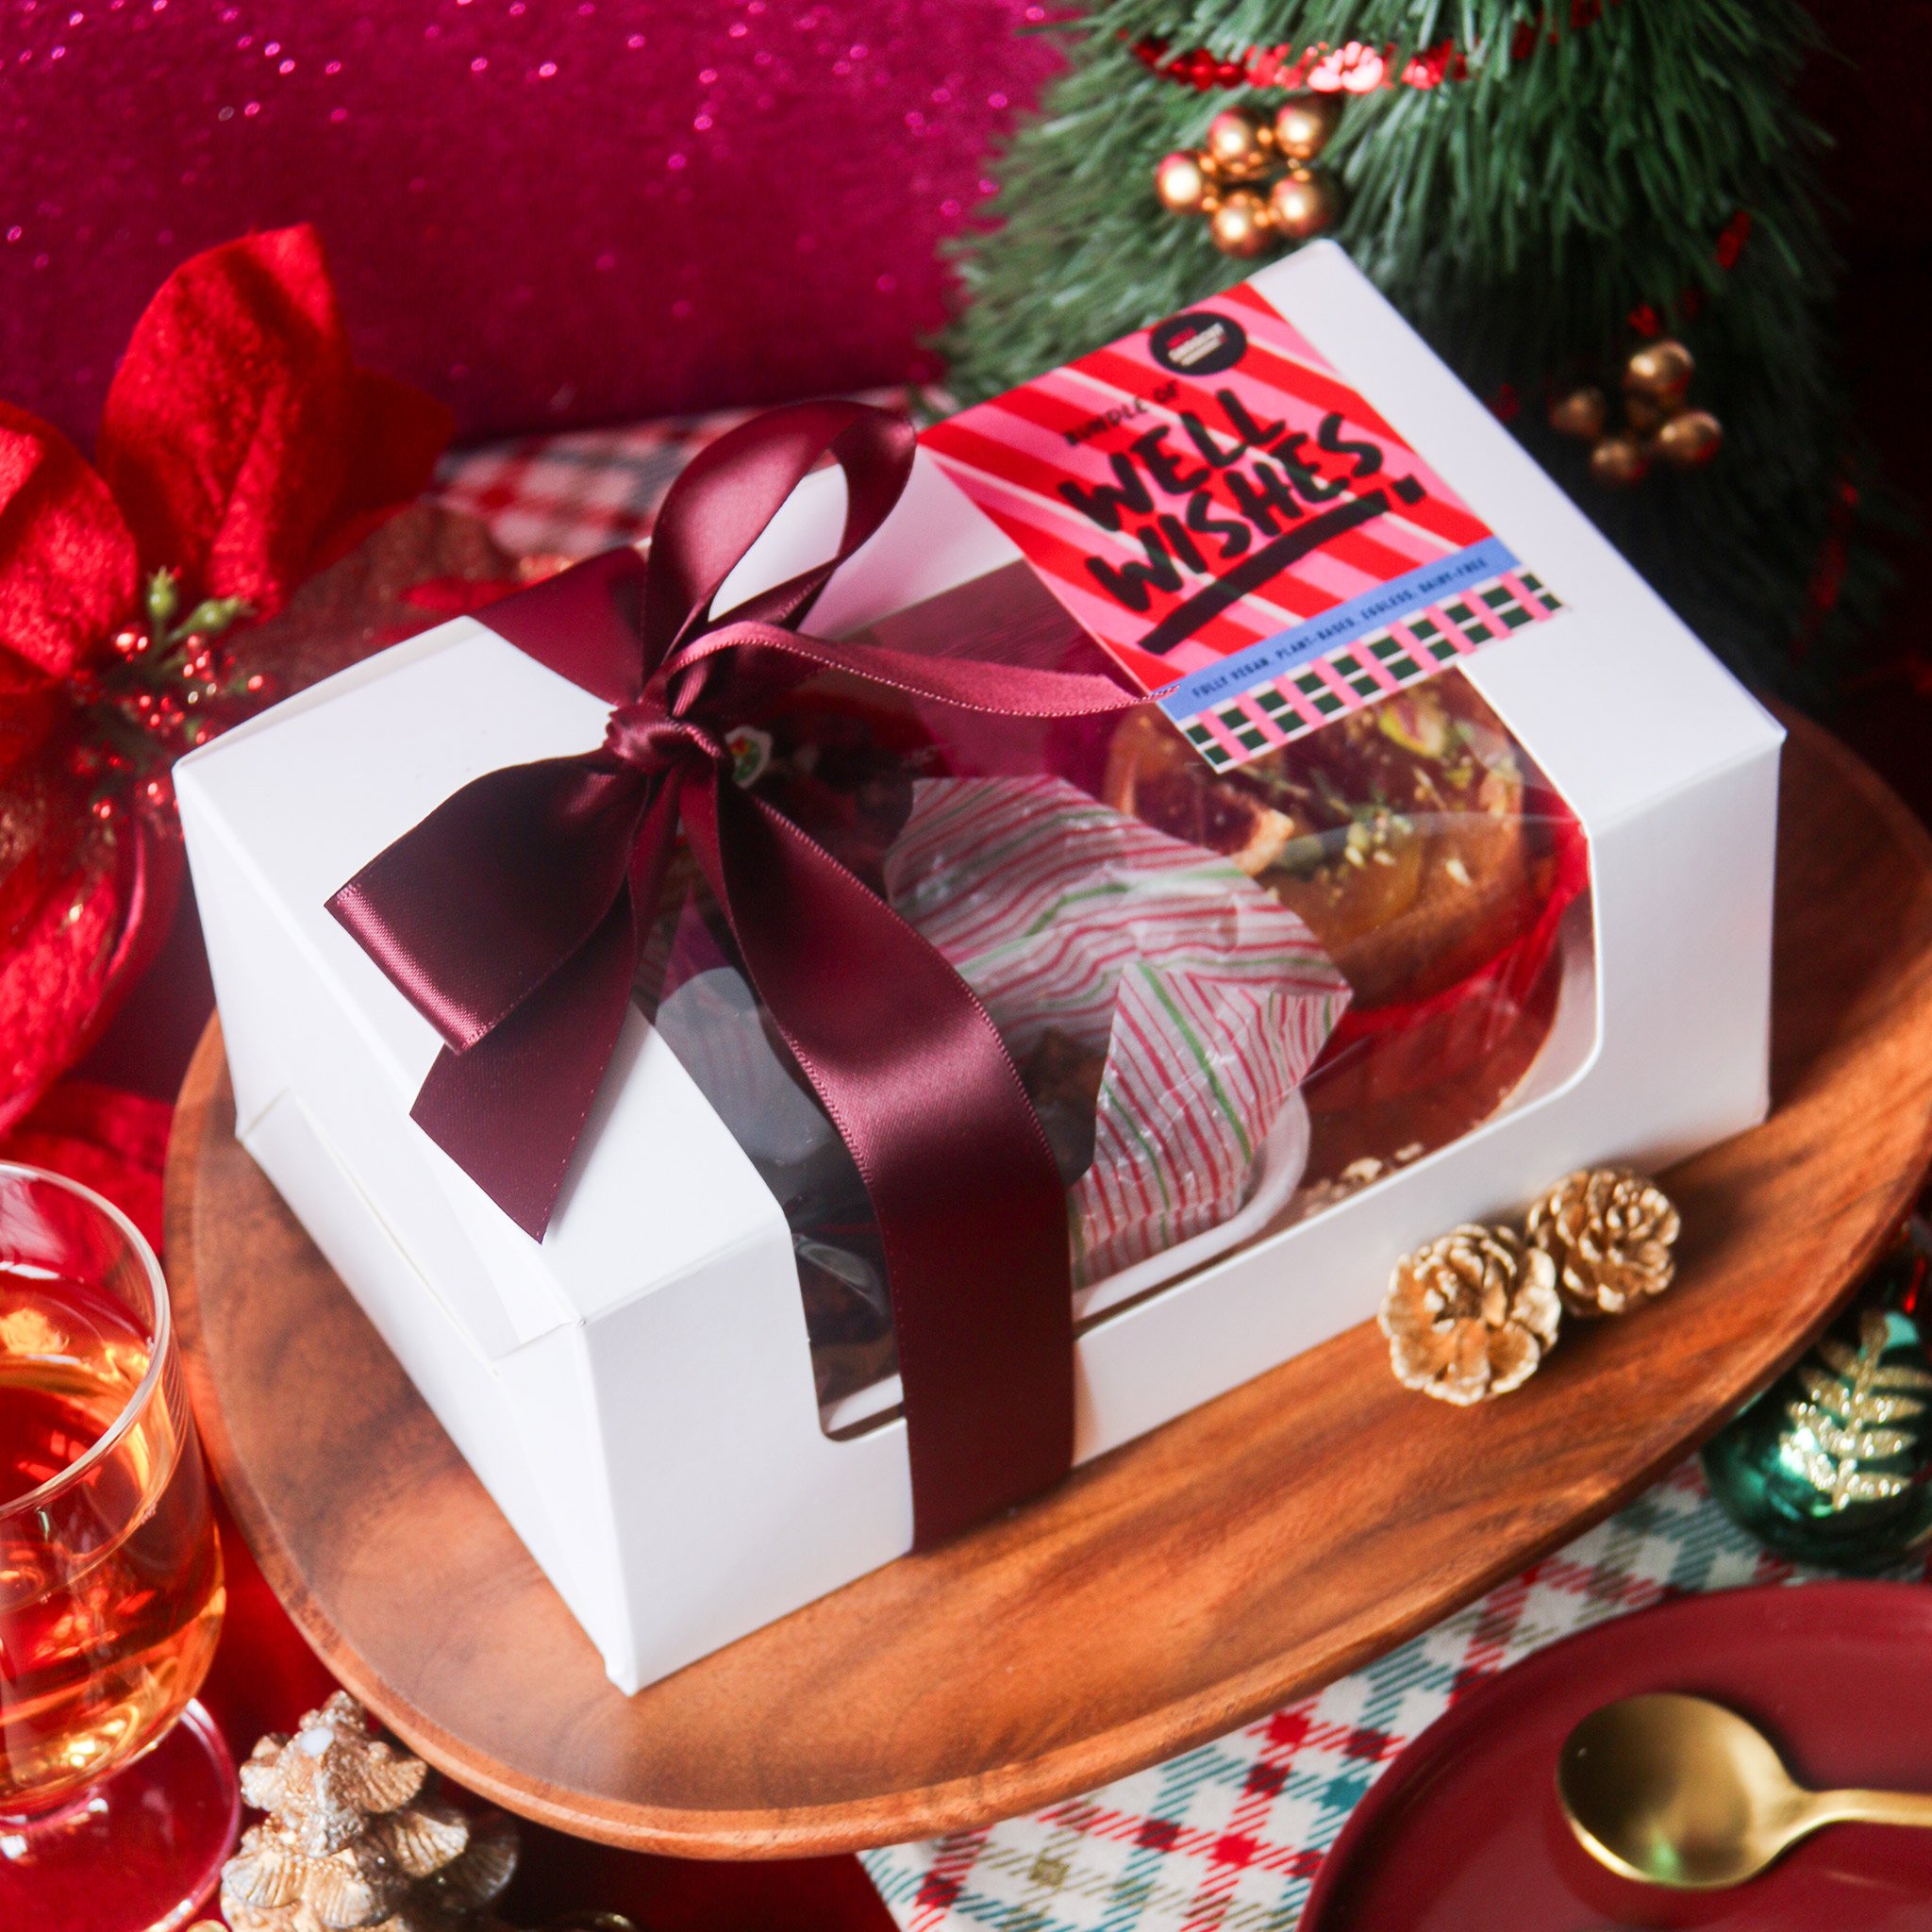 Christmas-Bake-Box-Bundle-Of-Well-Wishes-WellSmoocht-1.jpg